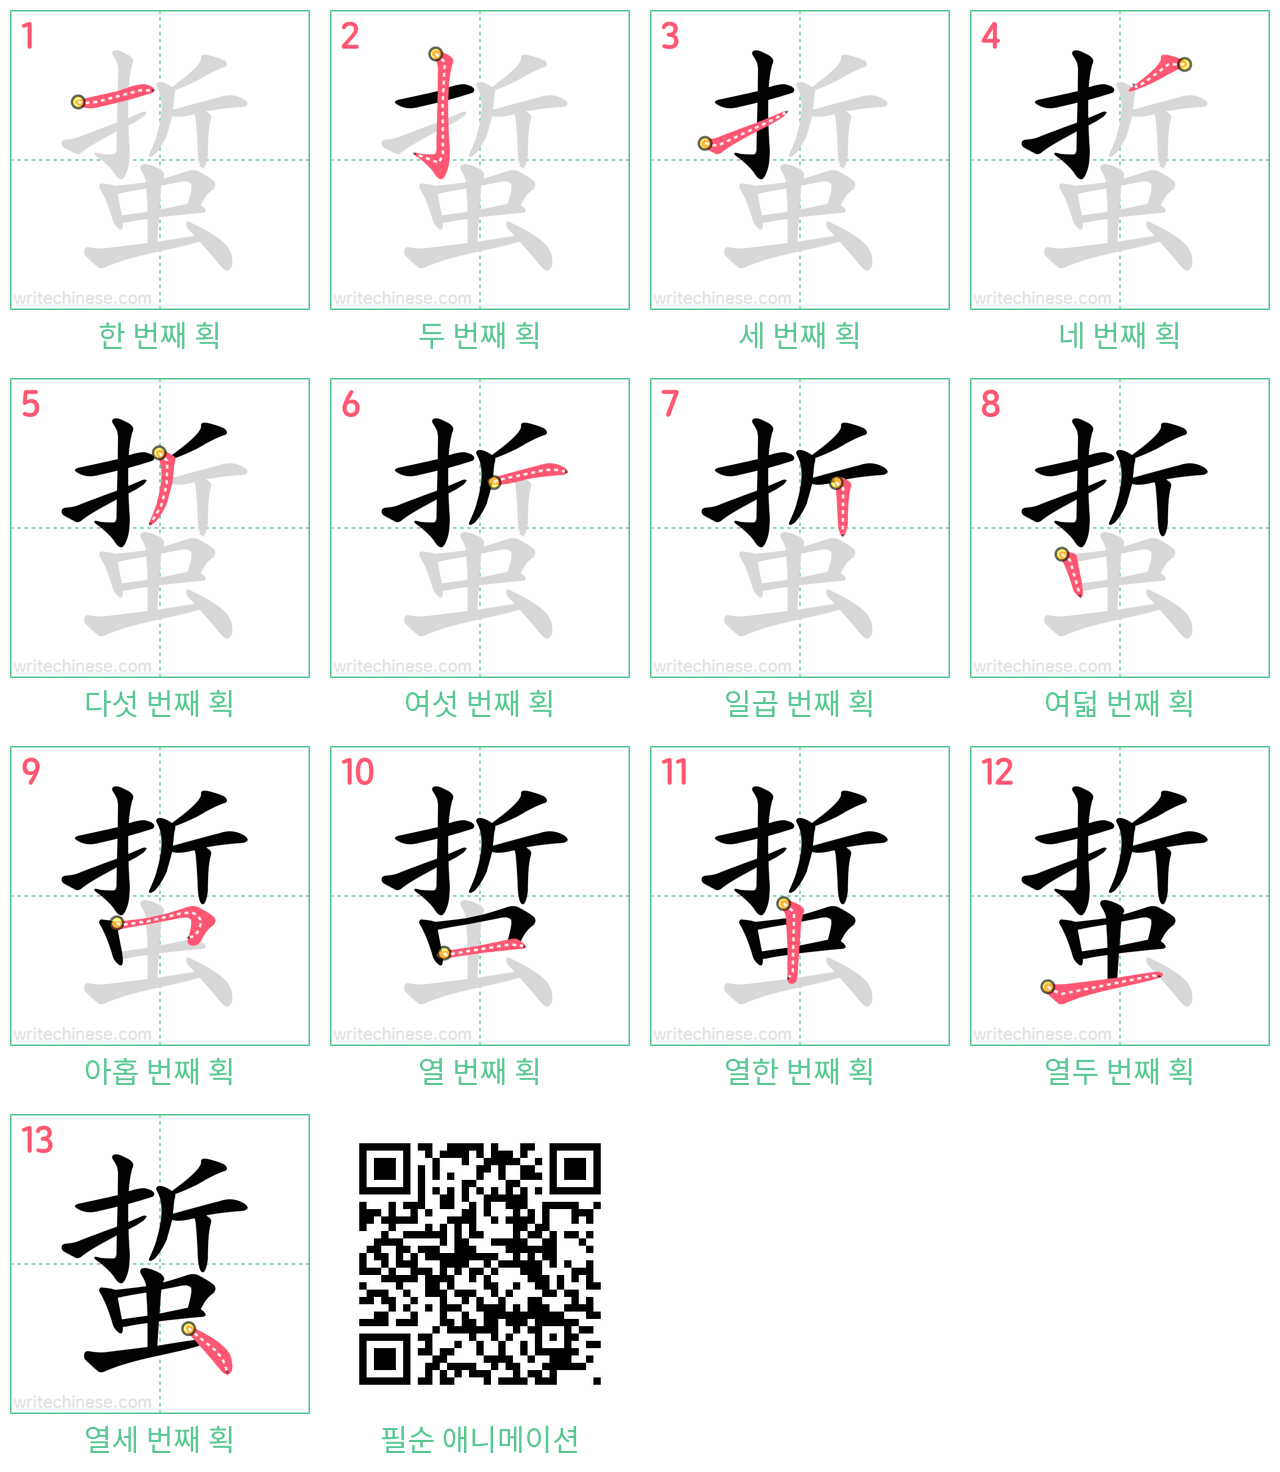 蜇 step-by-step stroke order diagrams